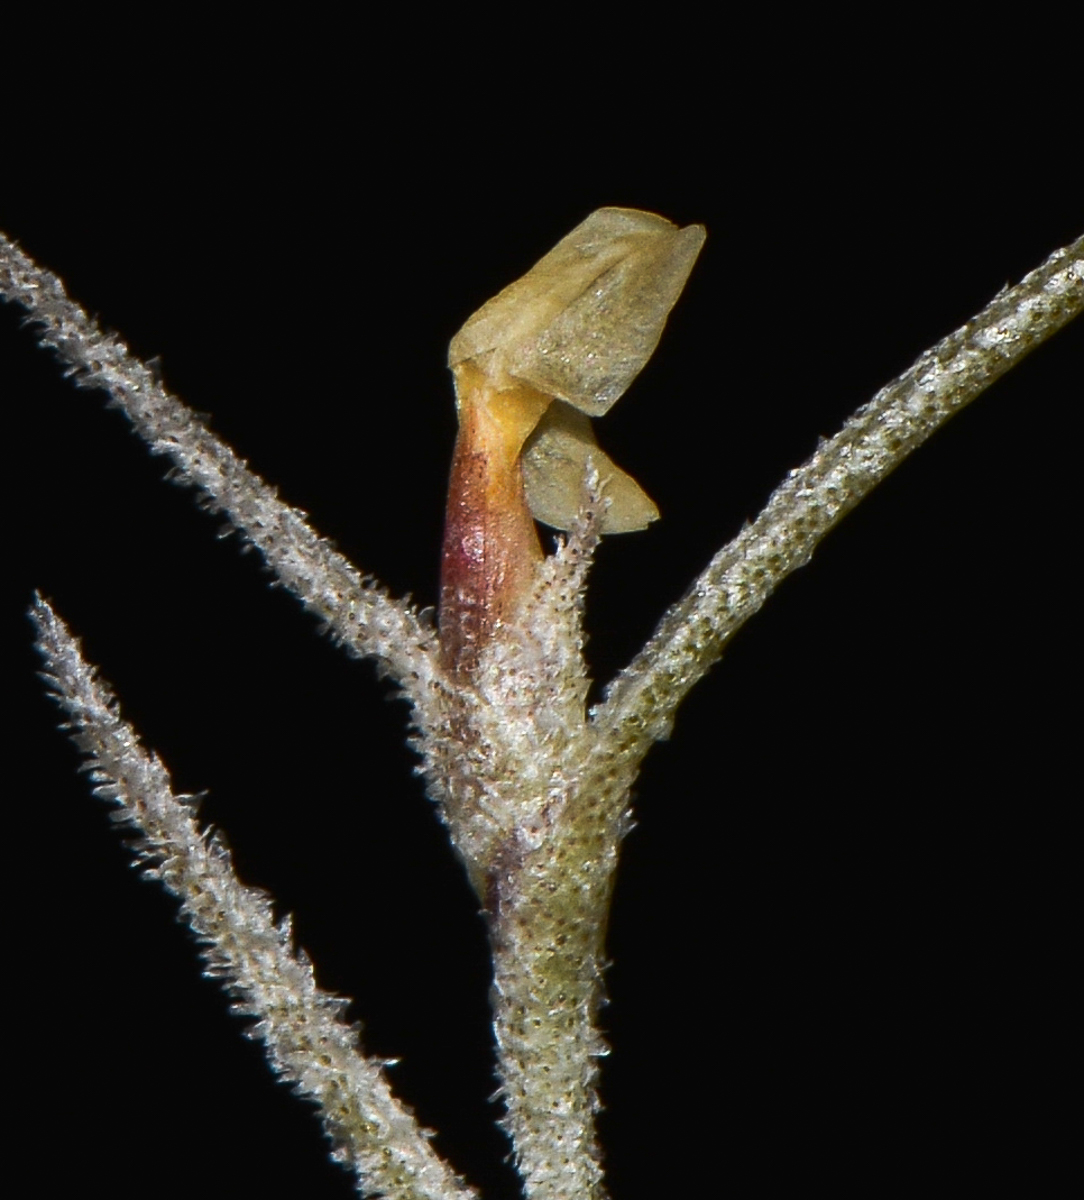 Image of Tillandsia usneoides specimen.